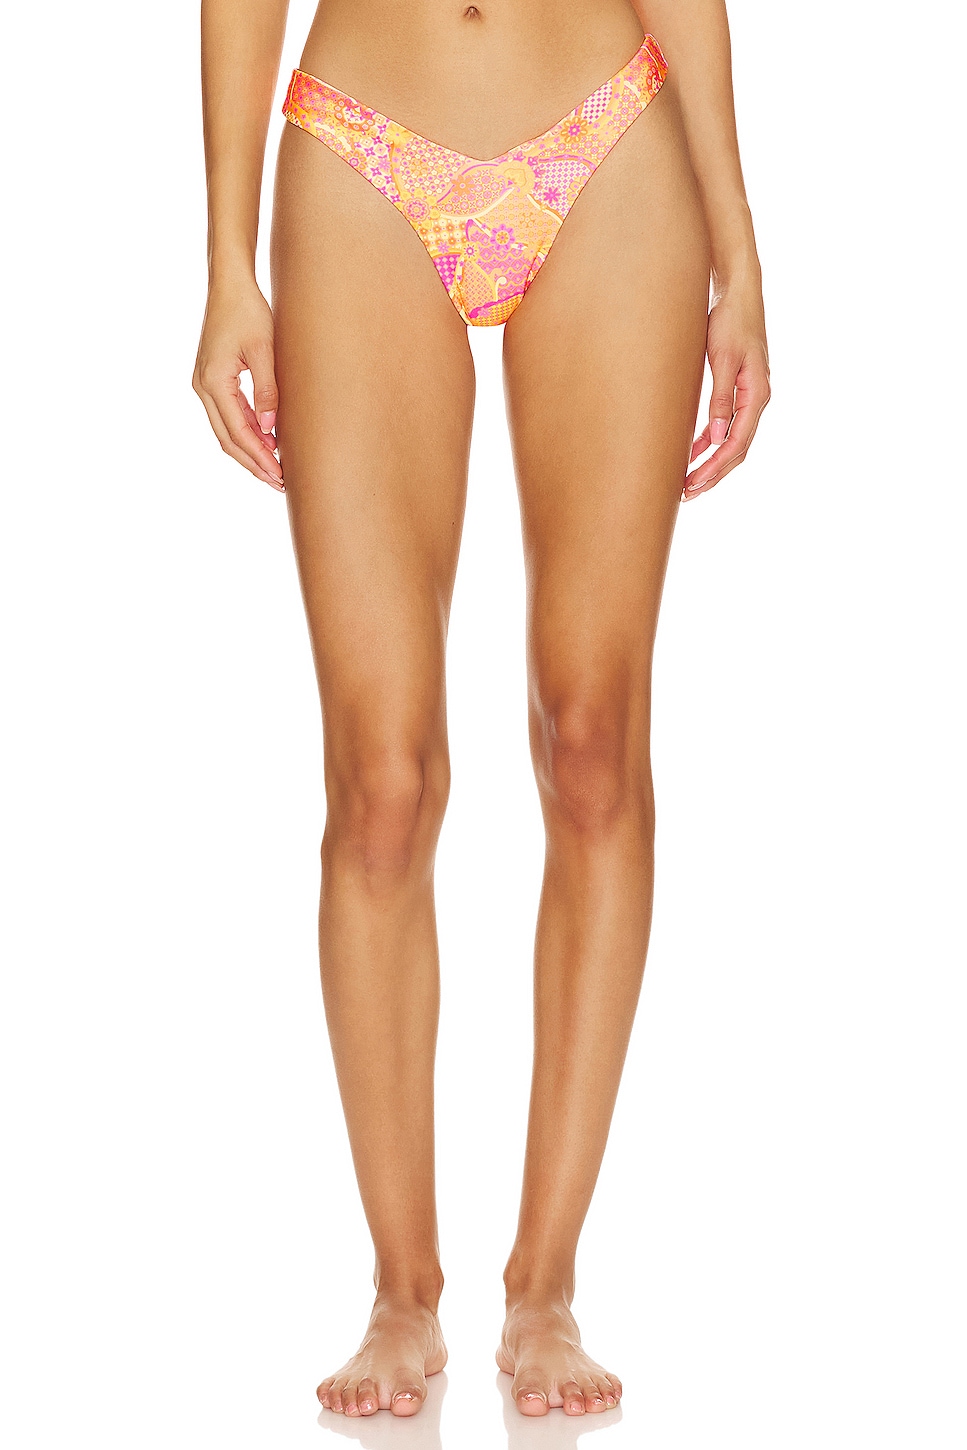 KULANI KINIS Flamingo Pink Ribbed Cheeky High Waist Bikini Bottom